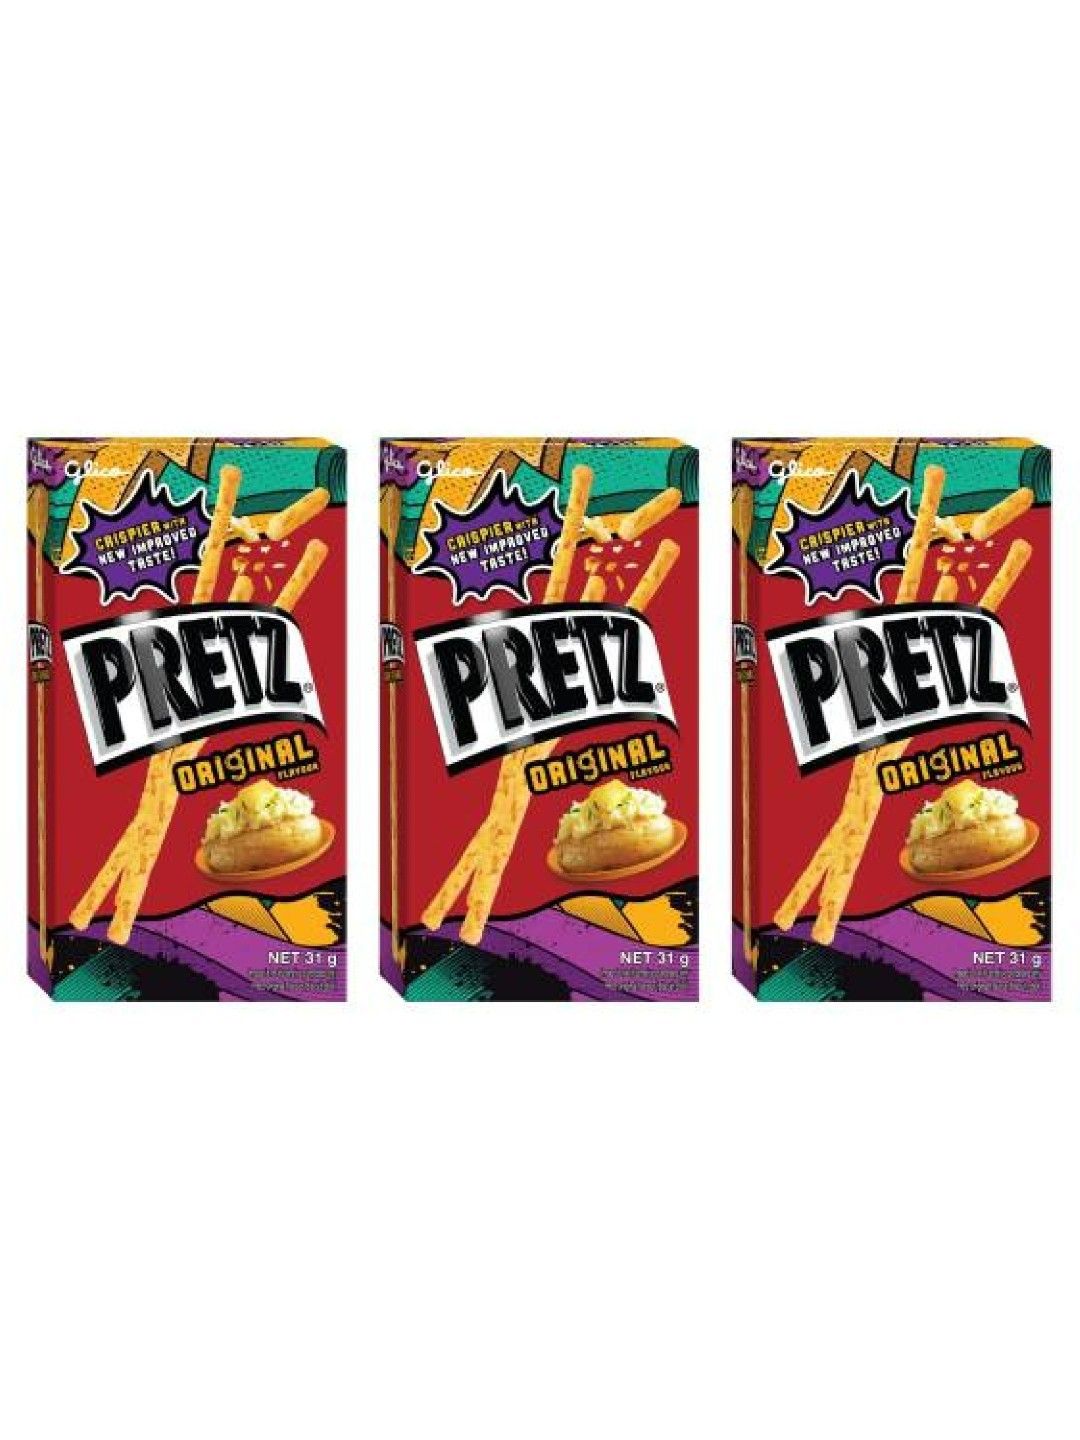 Pretz Original Flavour Biscuit Sticks (Bundle of 3)